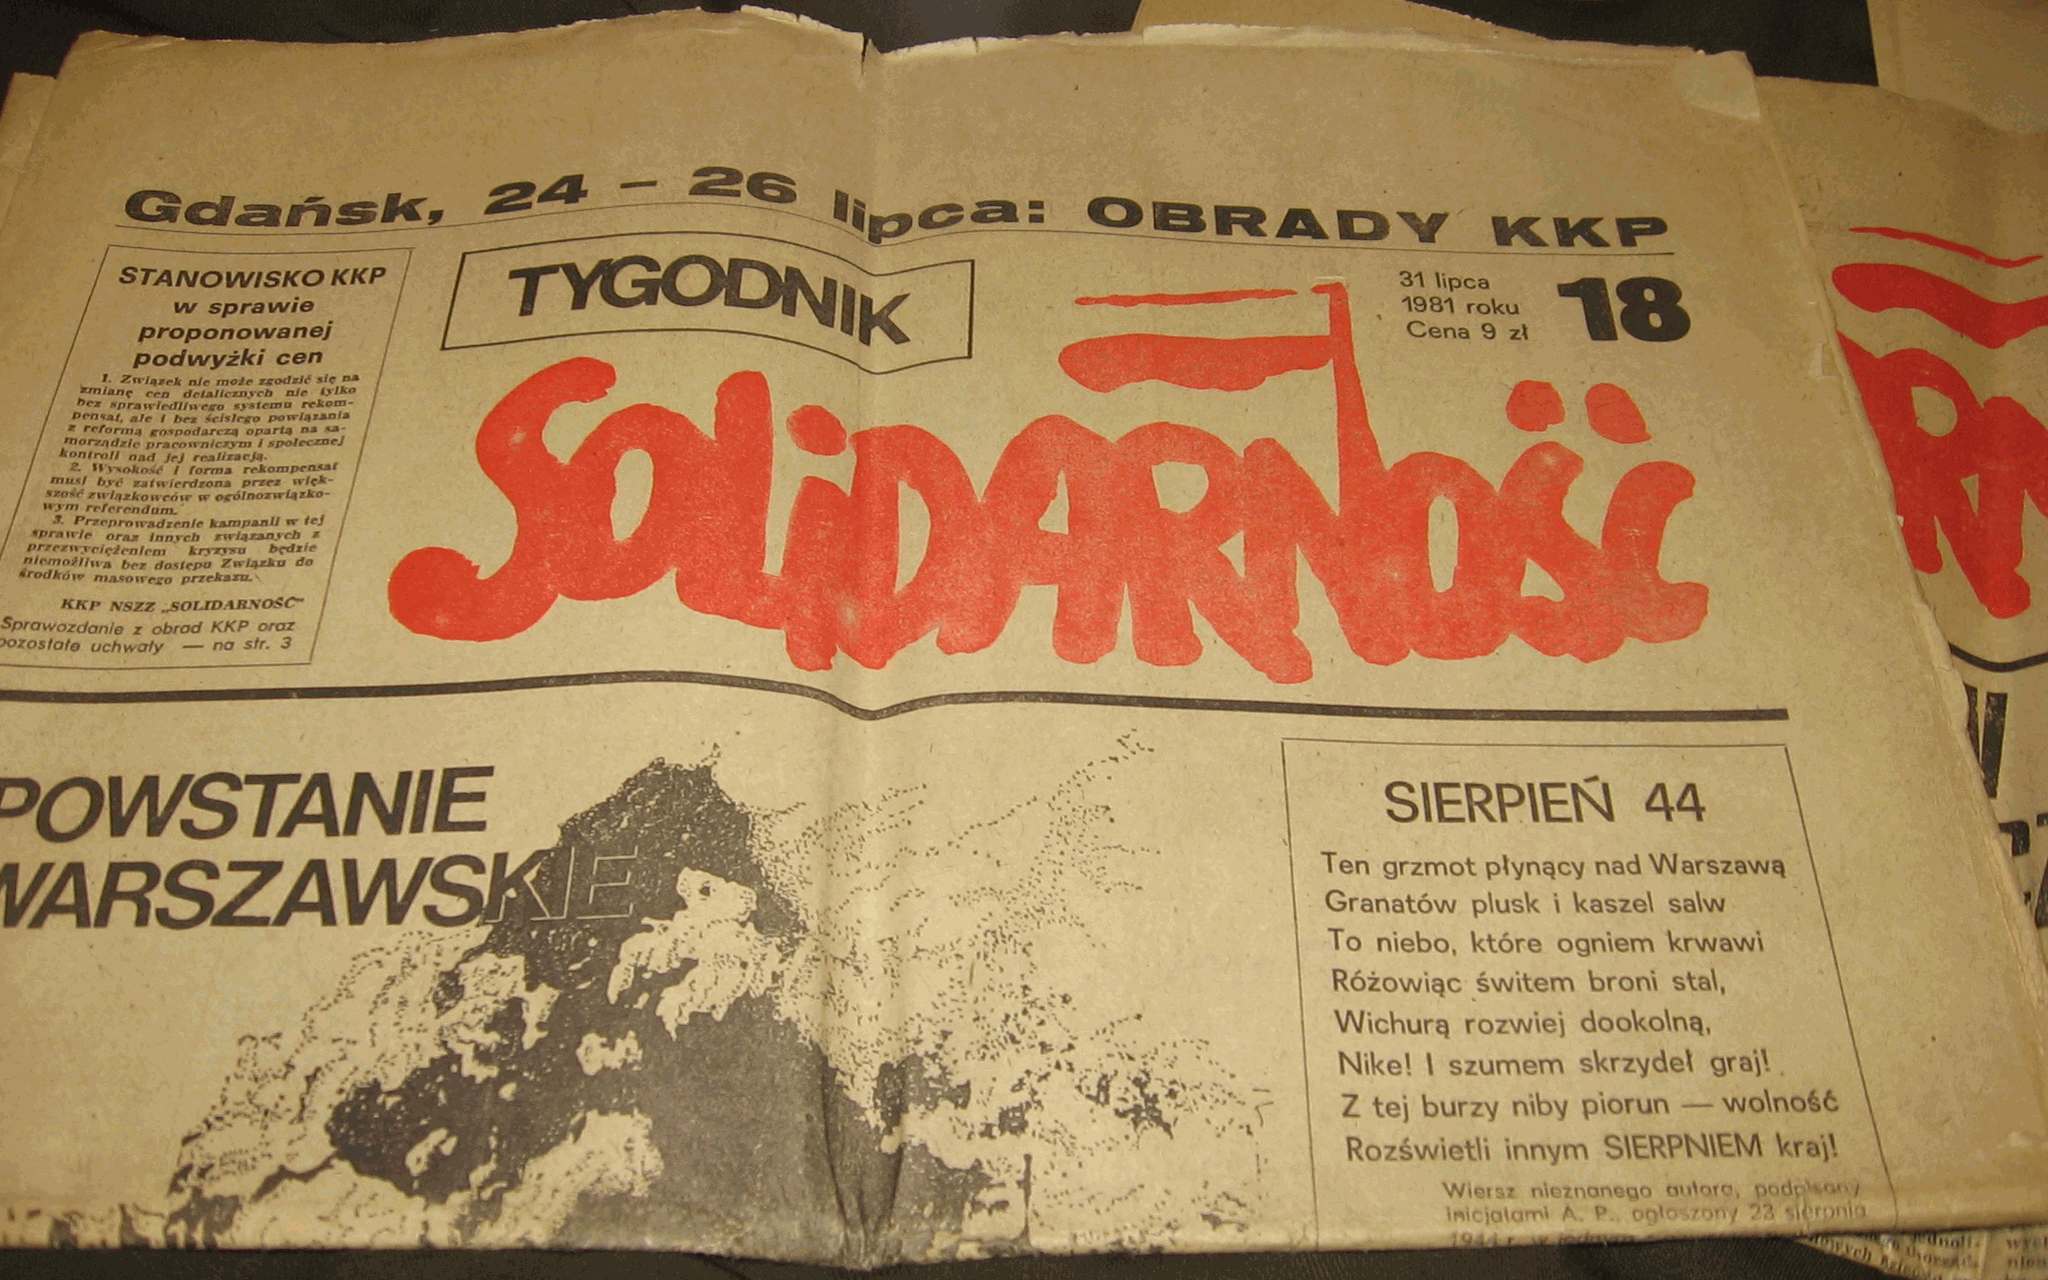 Tygodnik Solidarność (weekly magazine Solidarity), 1981. Source: wikimedia/ Public domain.